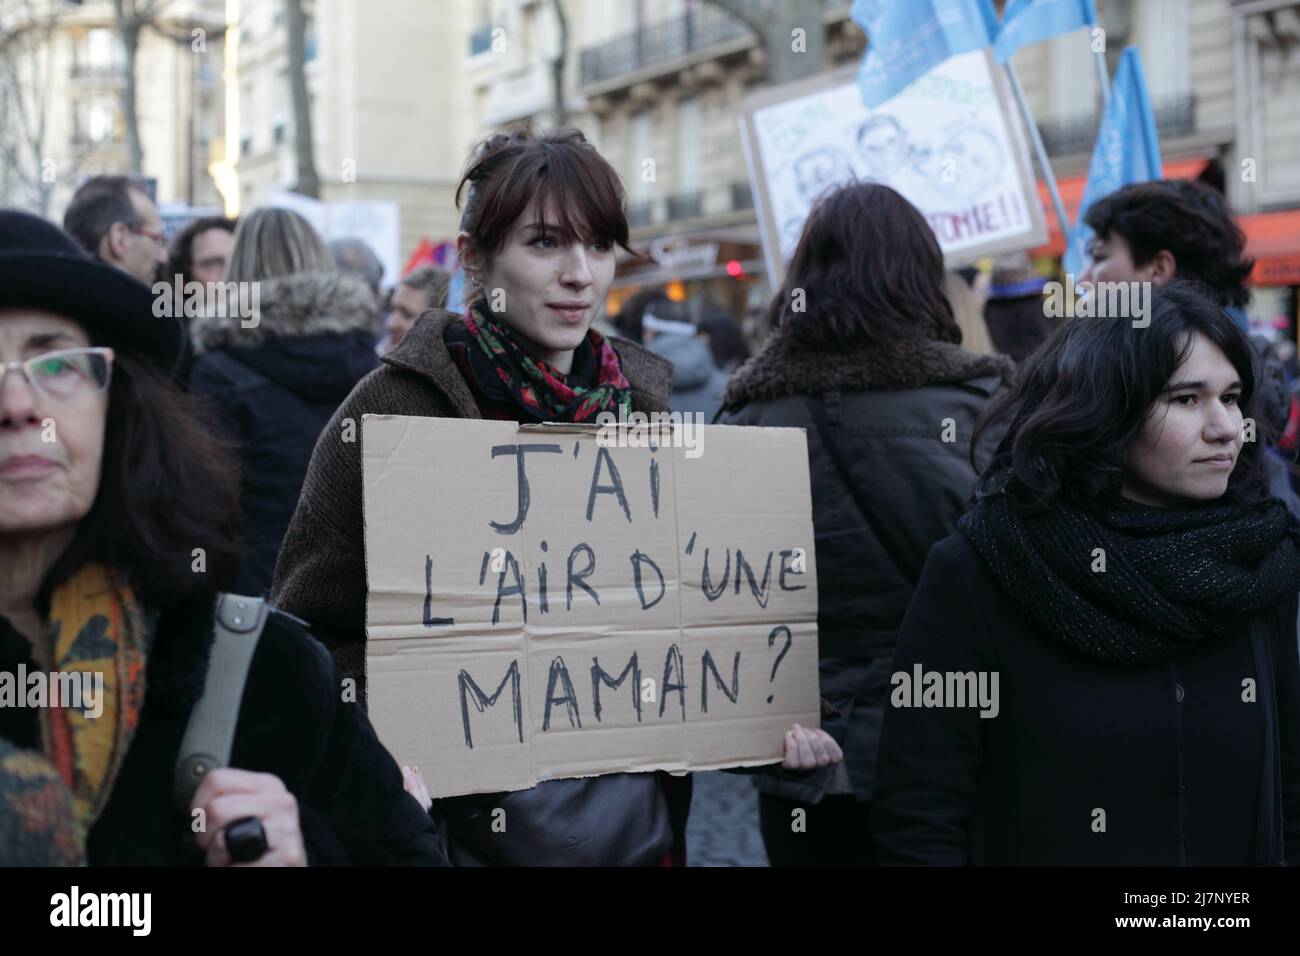 Paris : Manifestation contre le projet de loi anti-avortement en Espagne 01er février 2014. Panneau 'J'ai l'air d'une maman ?' Stockfoto